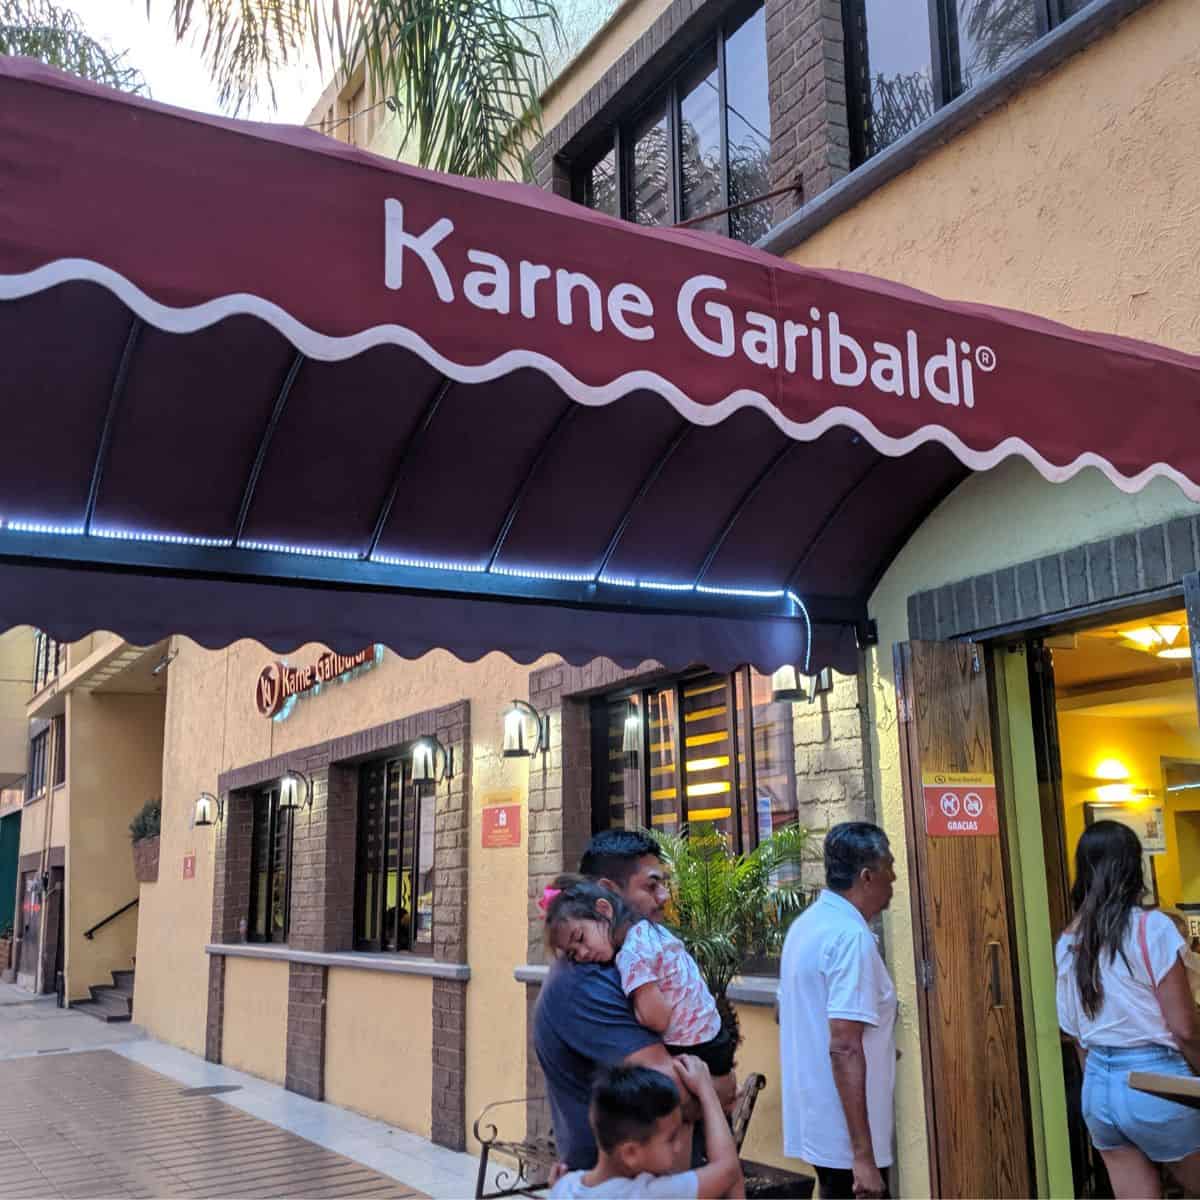 Sign in front of Karne Garibaldi in Guadalajara, MX.